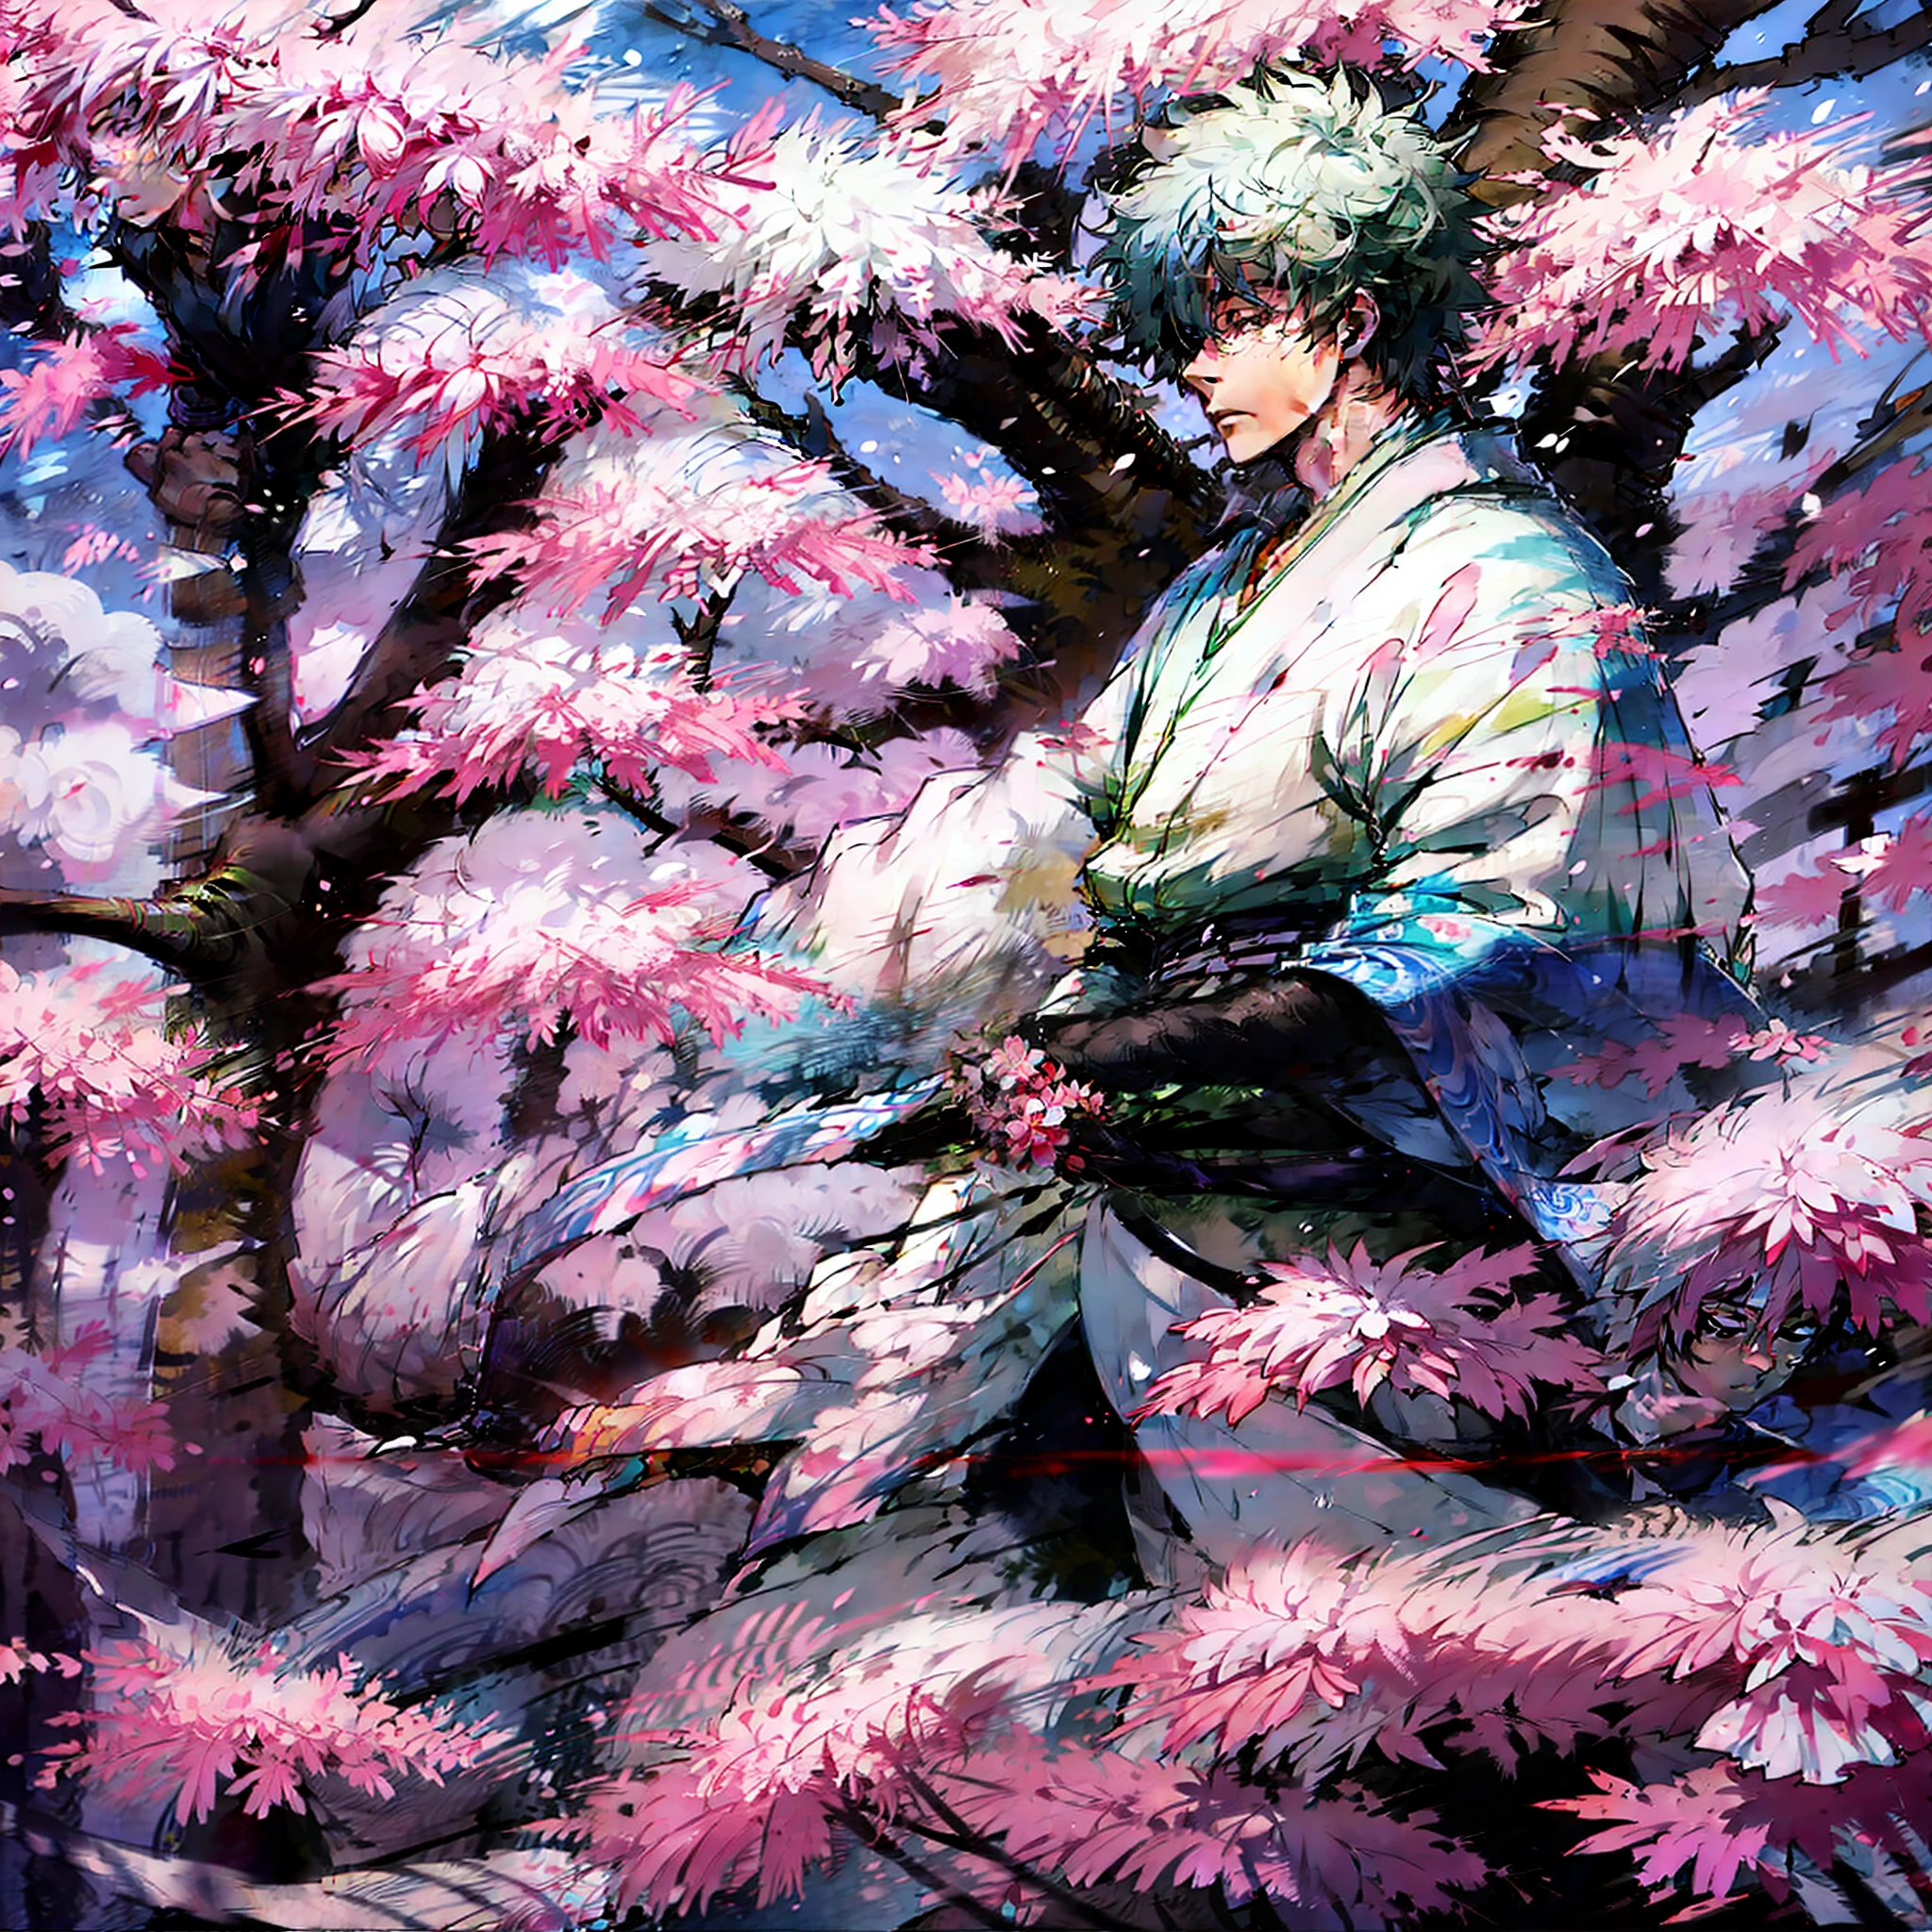 Gintoki, samurai outfit, meadow sakura trees, Melancholic atmosphere